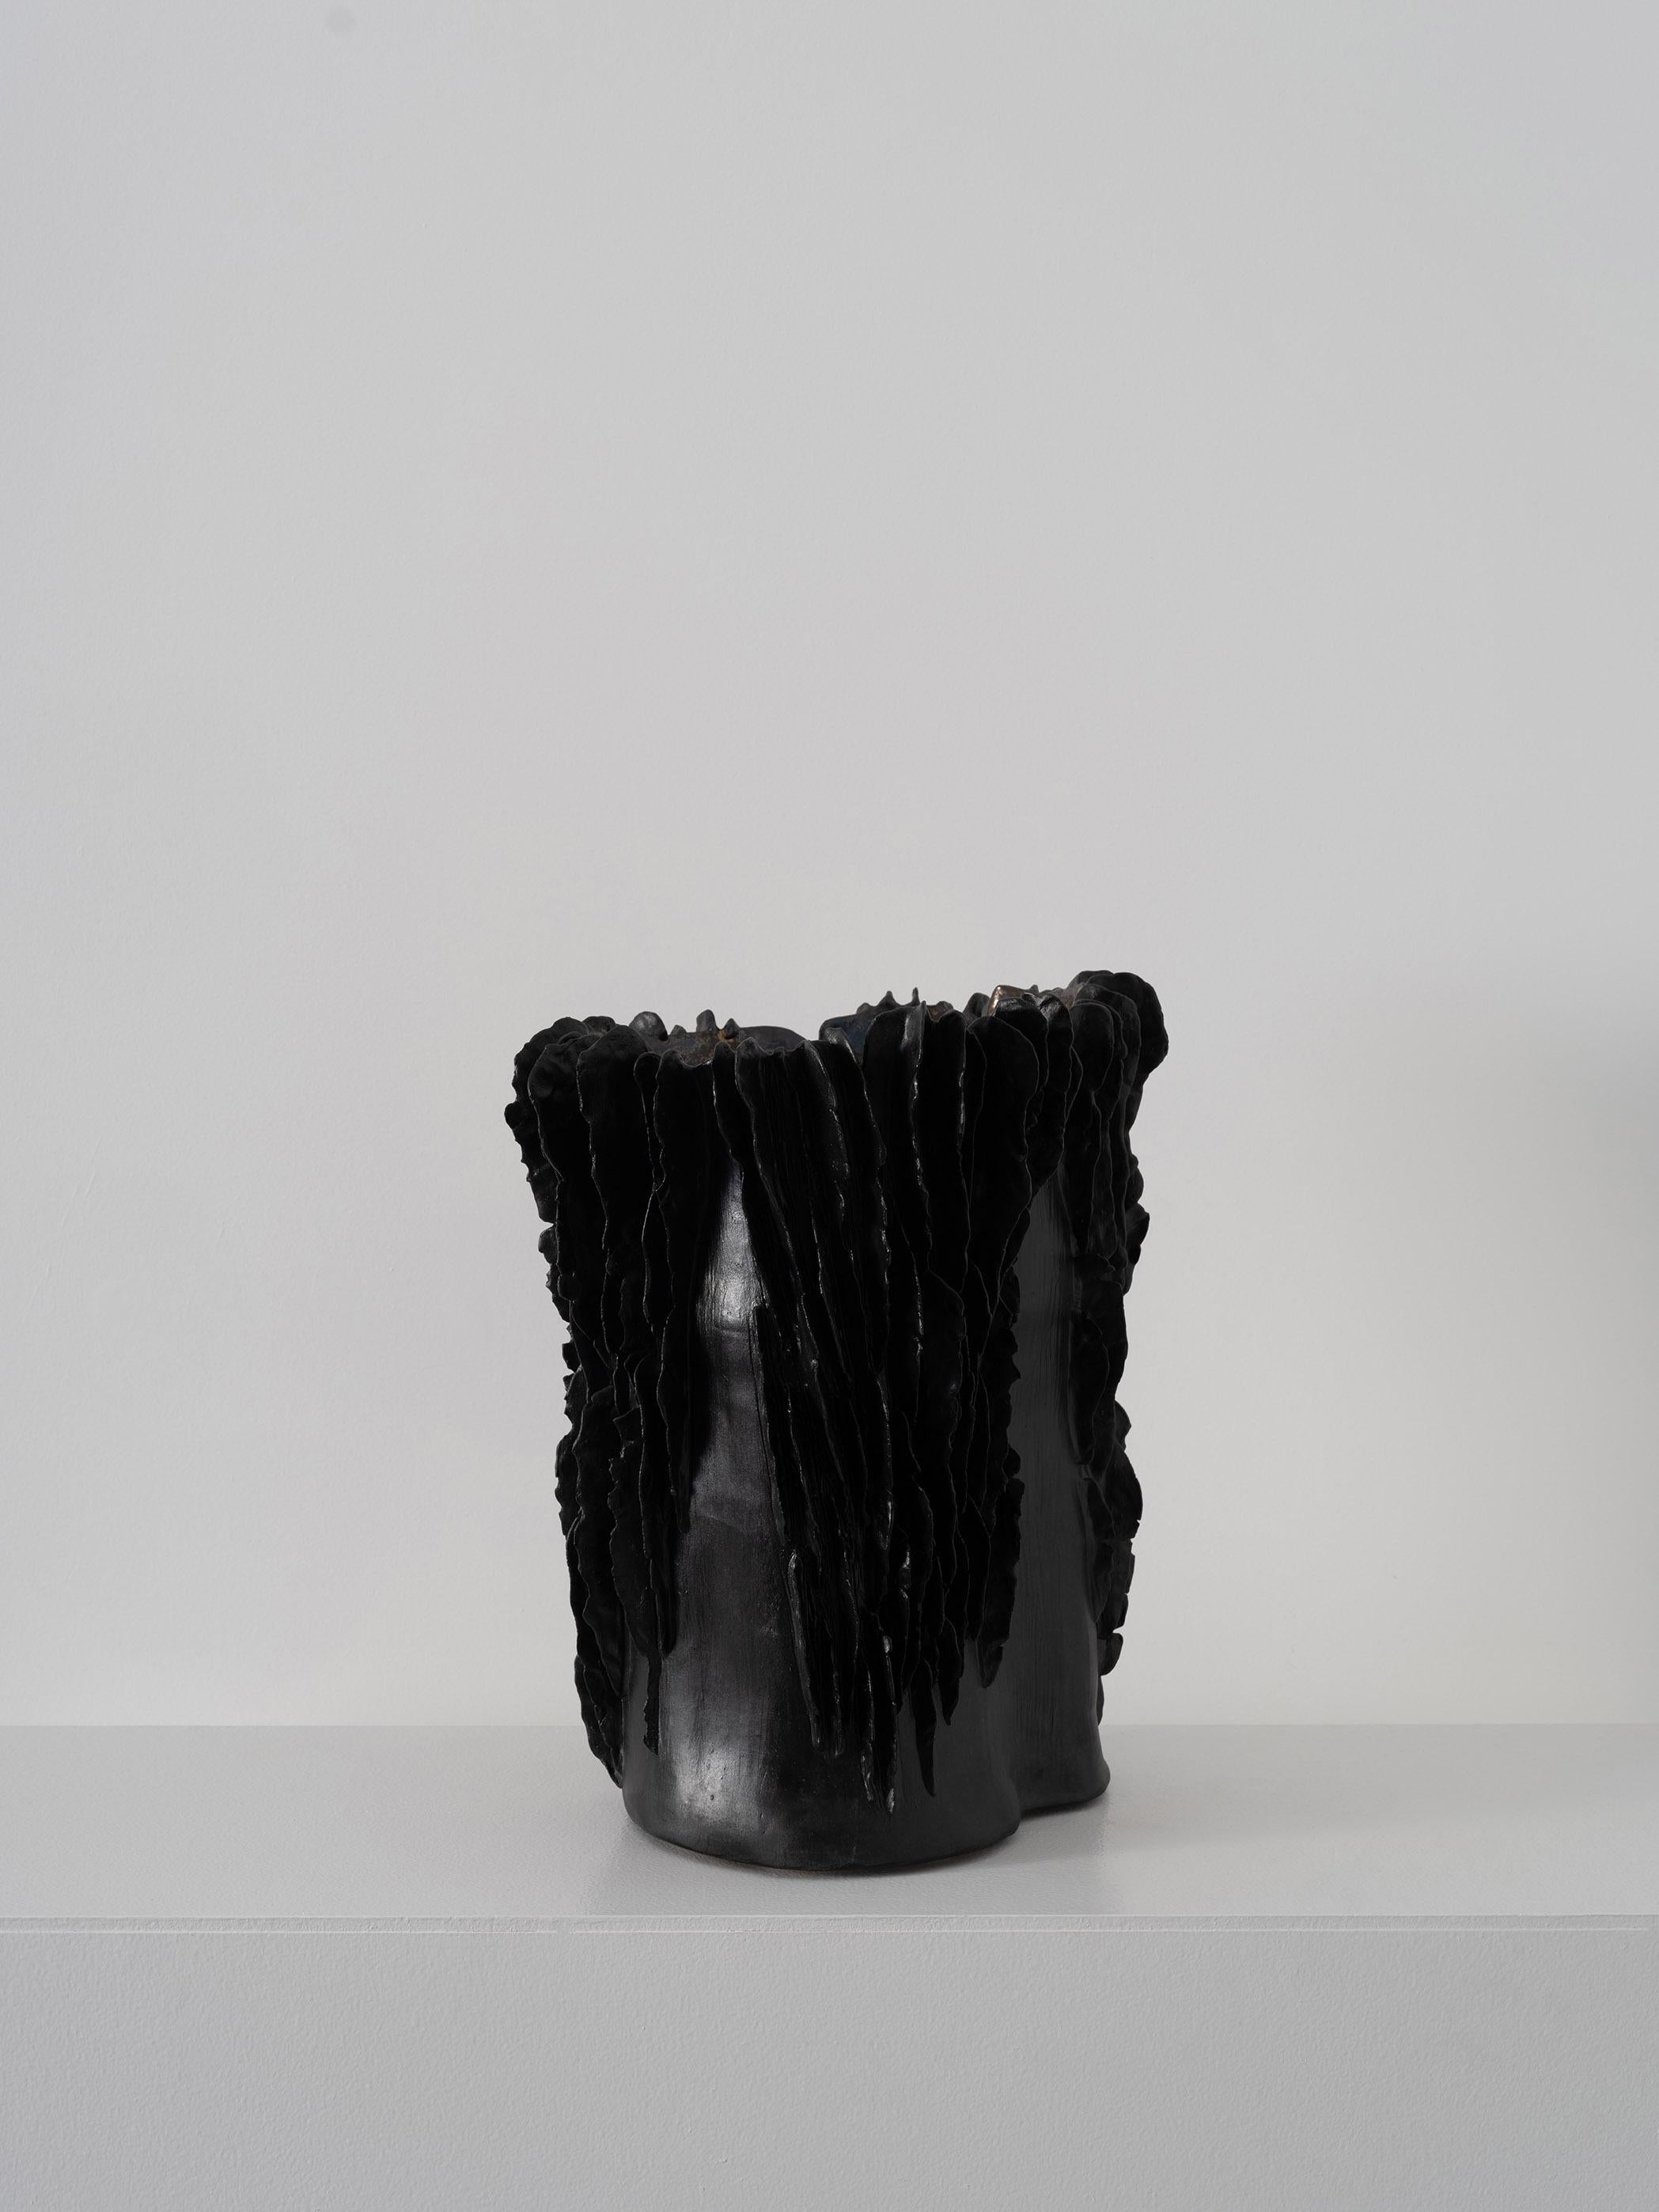 Trish DeMasi
Lamellengefäß, 2022
Metallisch glasierte und schwarze Keramik
11 x 13 x 15 Zoll.